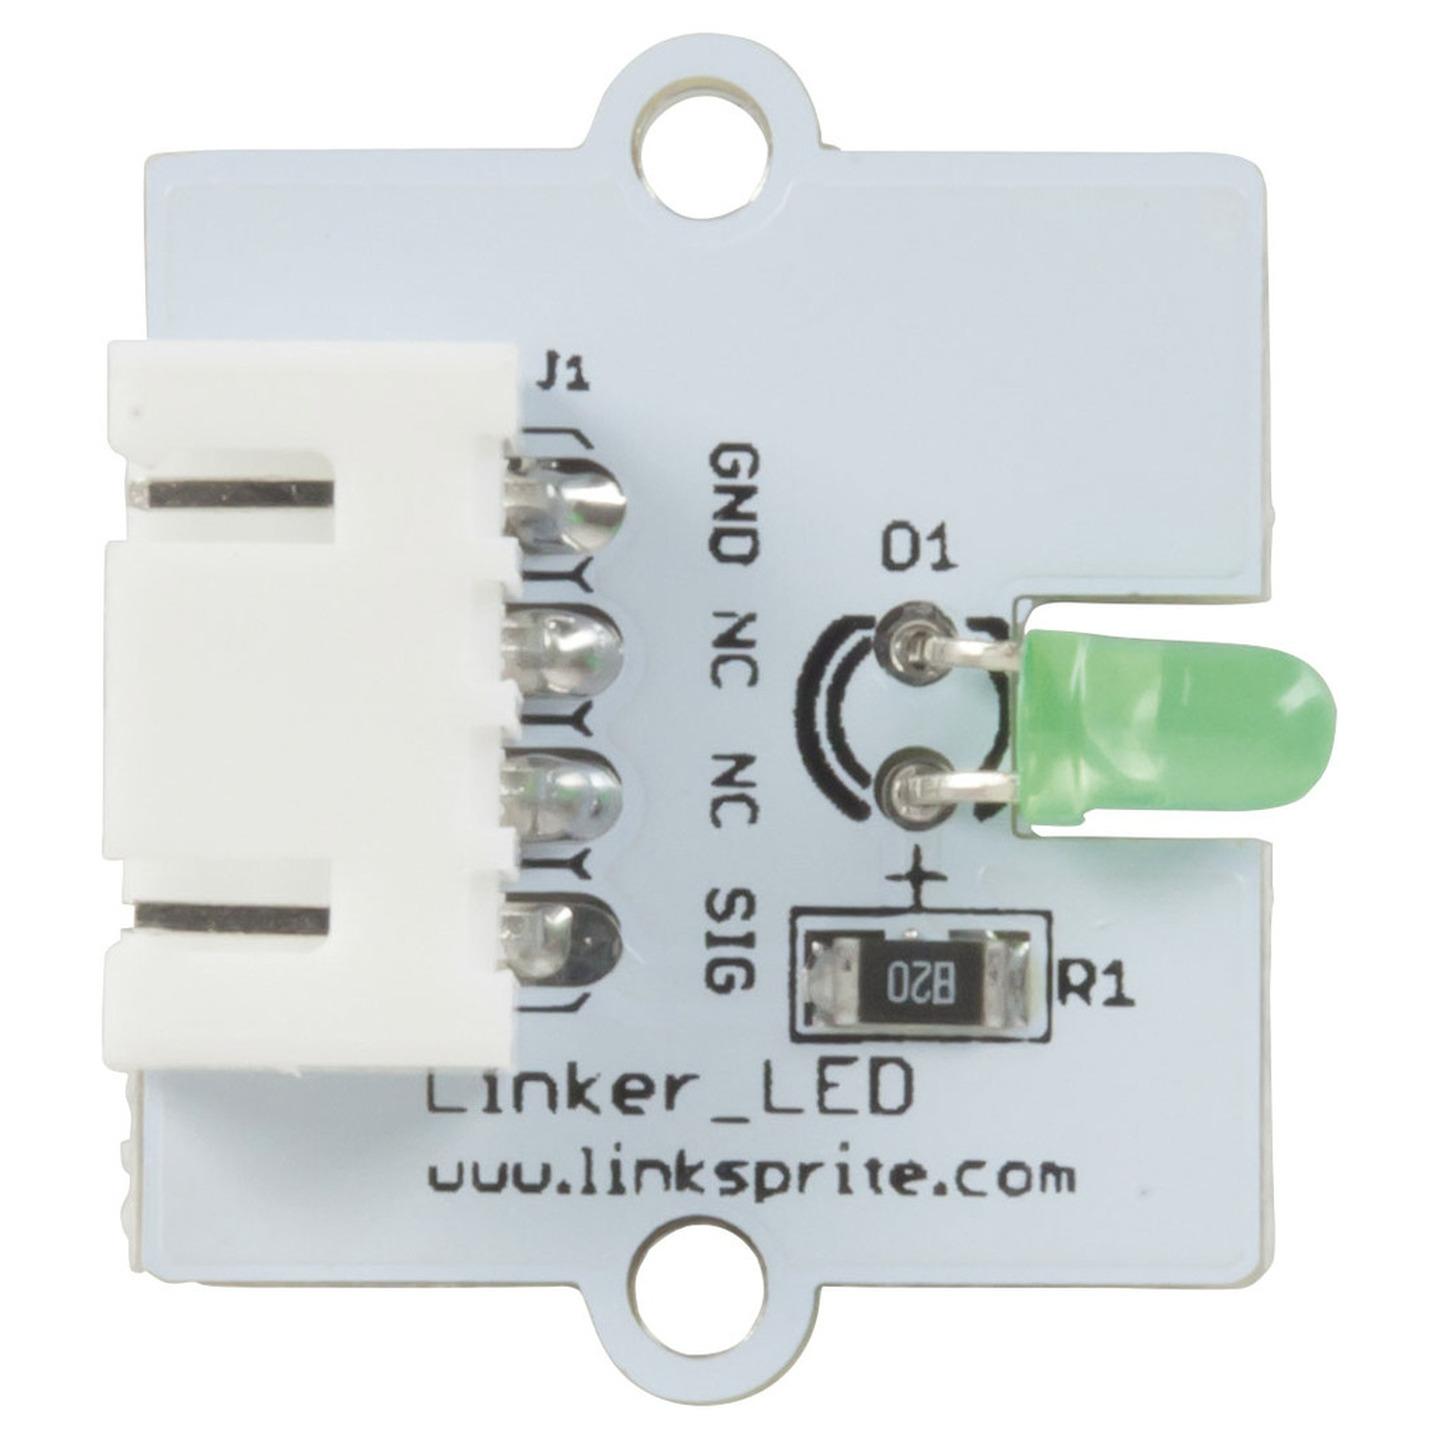 Linker 3MM Green LED for Arduino